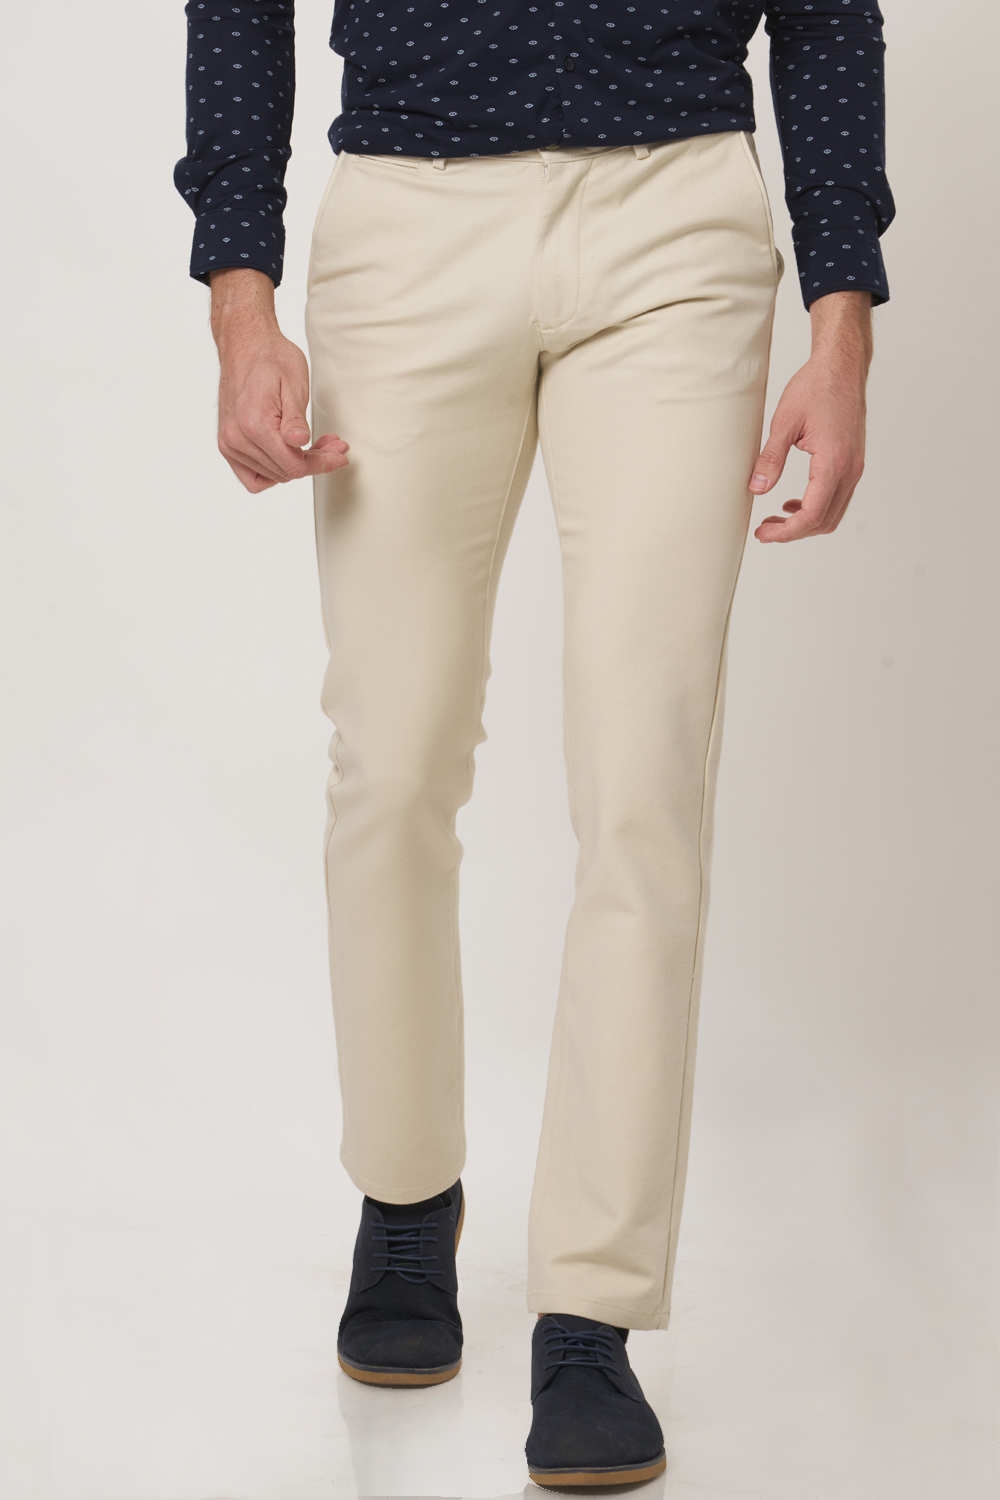 Basics | Basics Tapered Fit White Cap Ecru Stretch Trouser